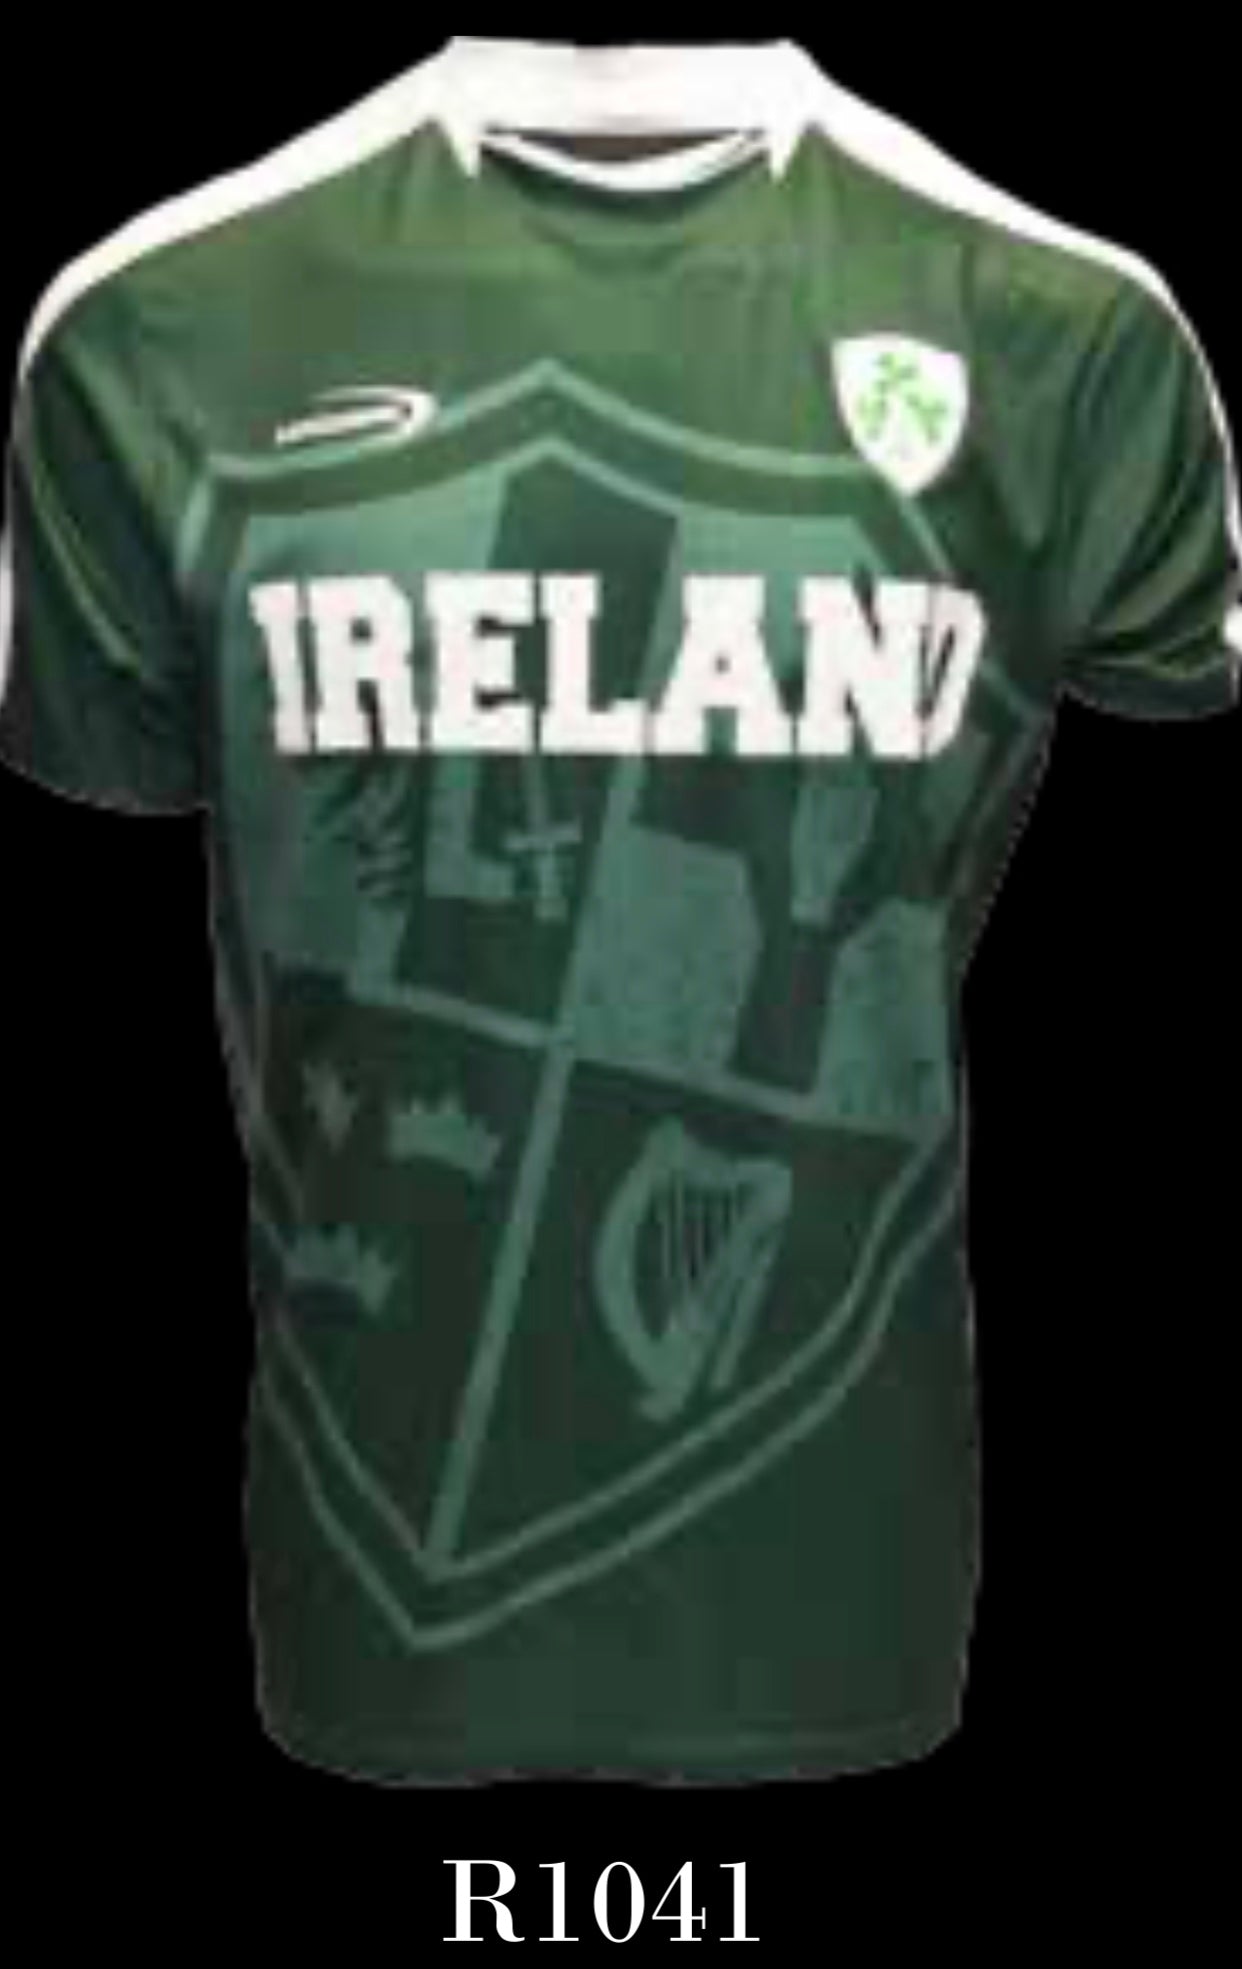 Performance shirt Ireland men’s soccer jersey R1041